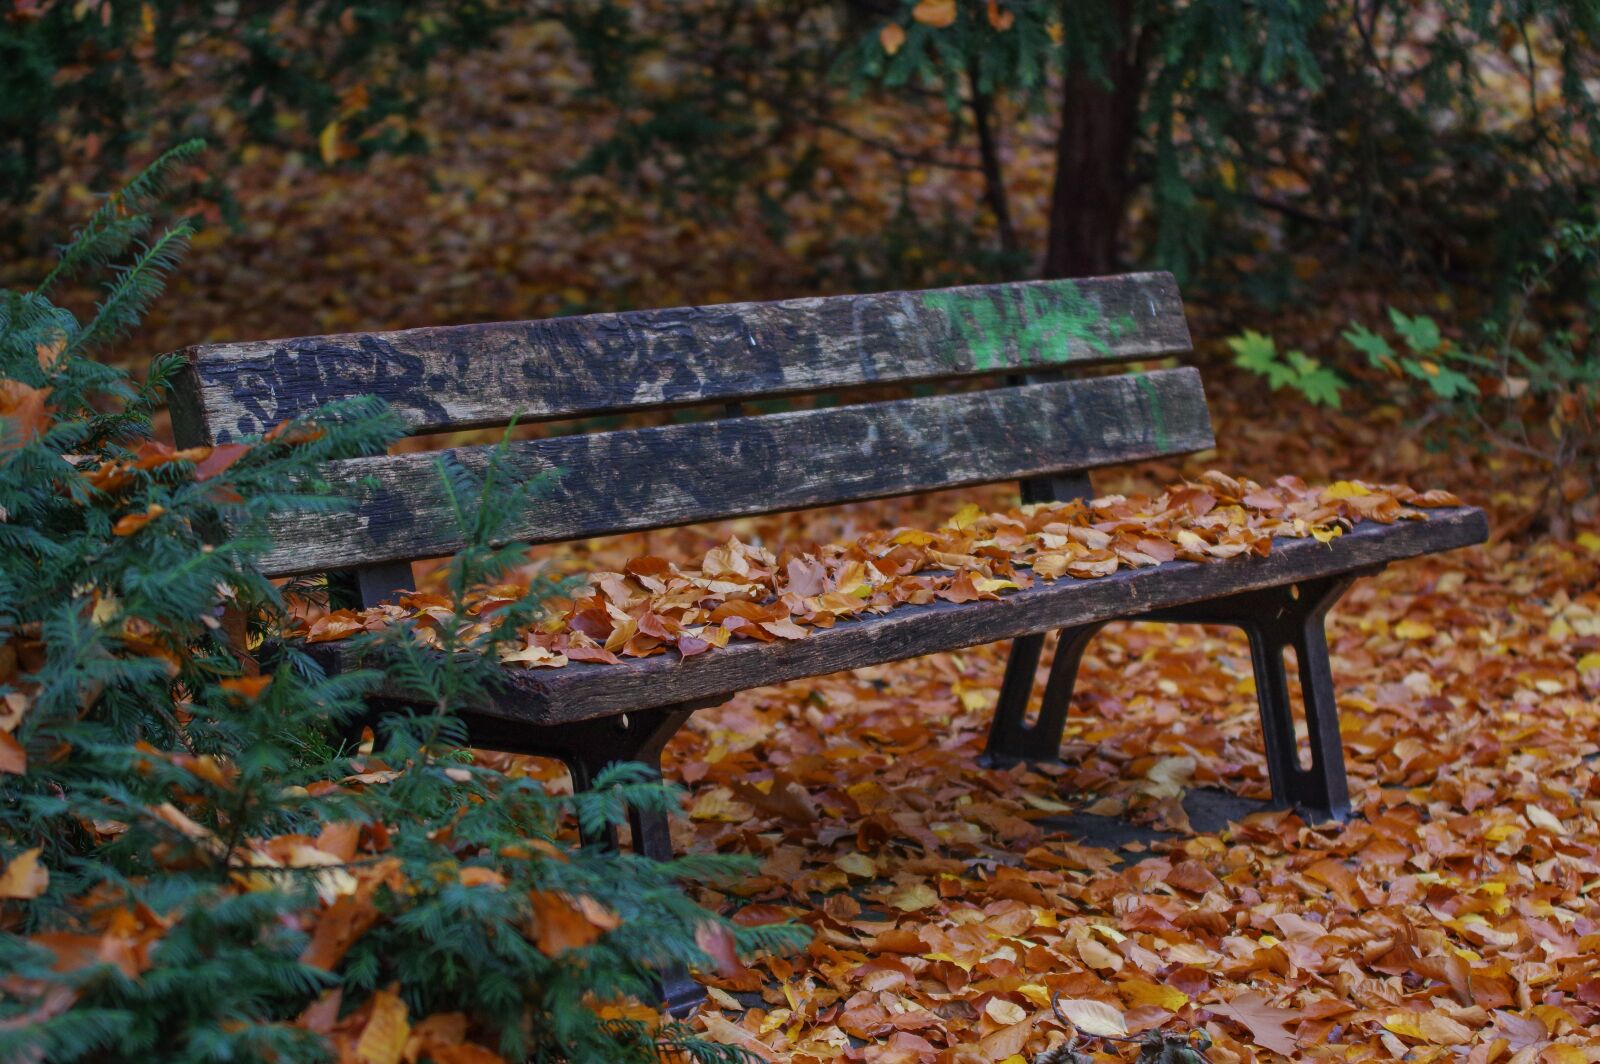 Tamron SP AF 70-200mm F2.8 Di LD (IF) MACRO sample photo. Park bench, autumn, nature photography